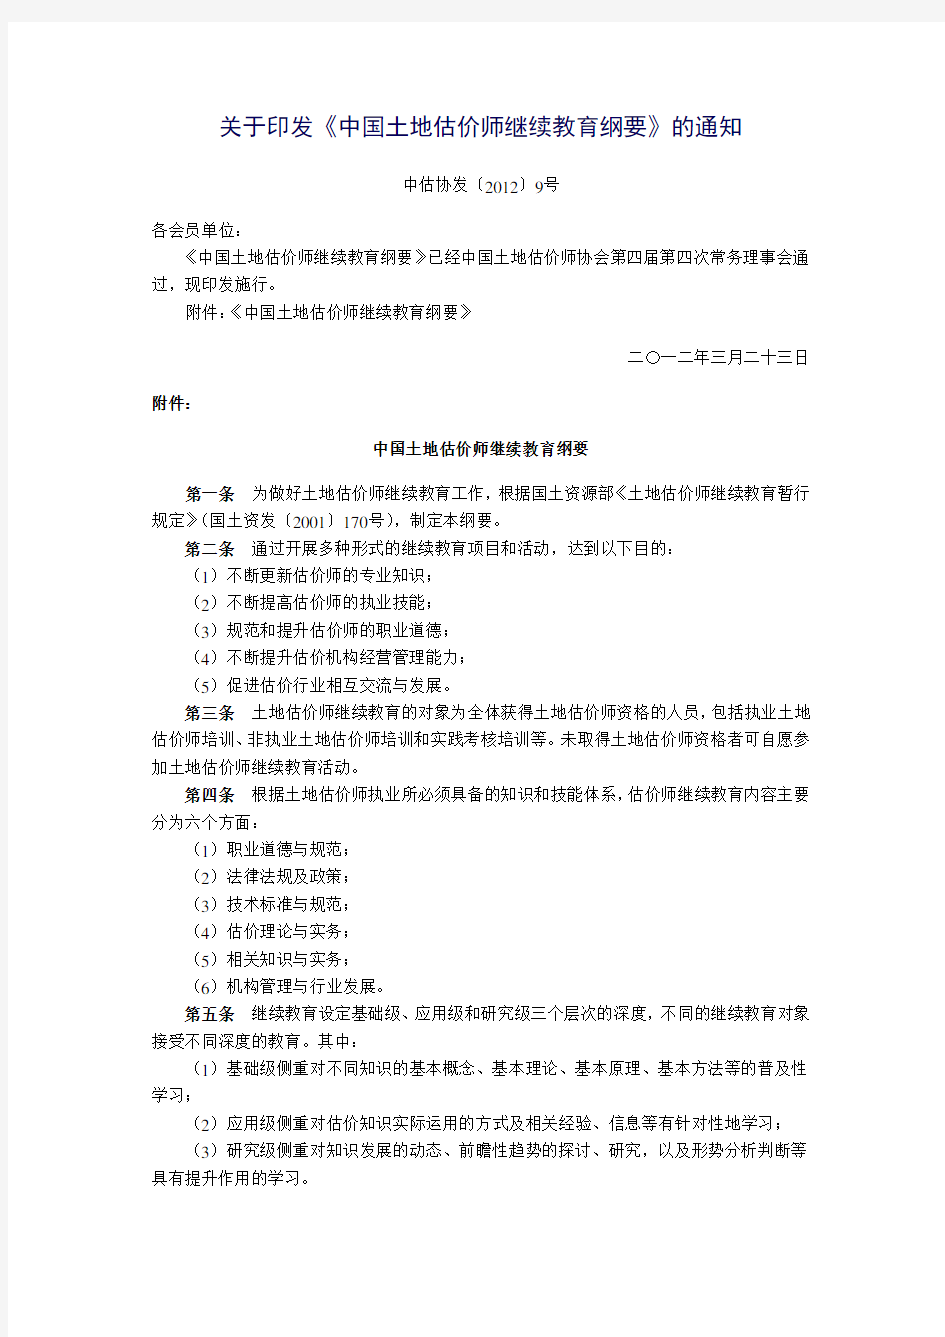 中估协发〔2012〕9号关于印发《中国土地估价师继续教育纲要》的通知正文及附件